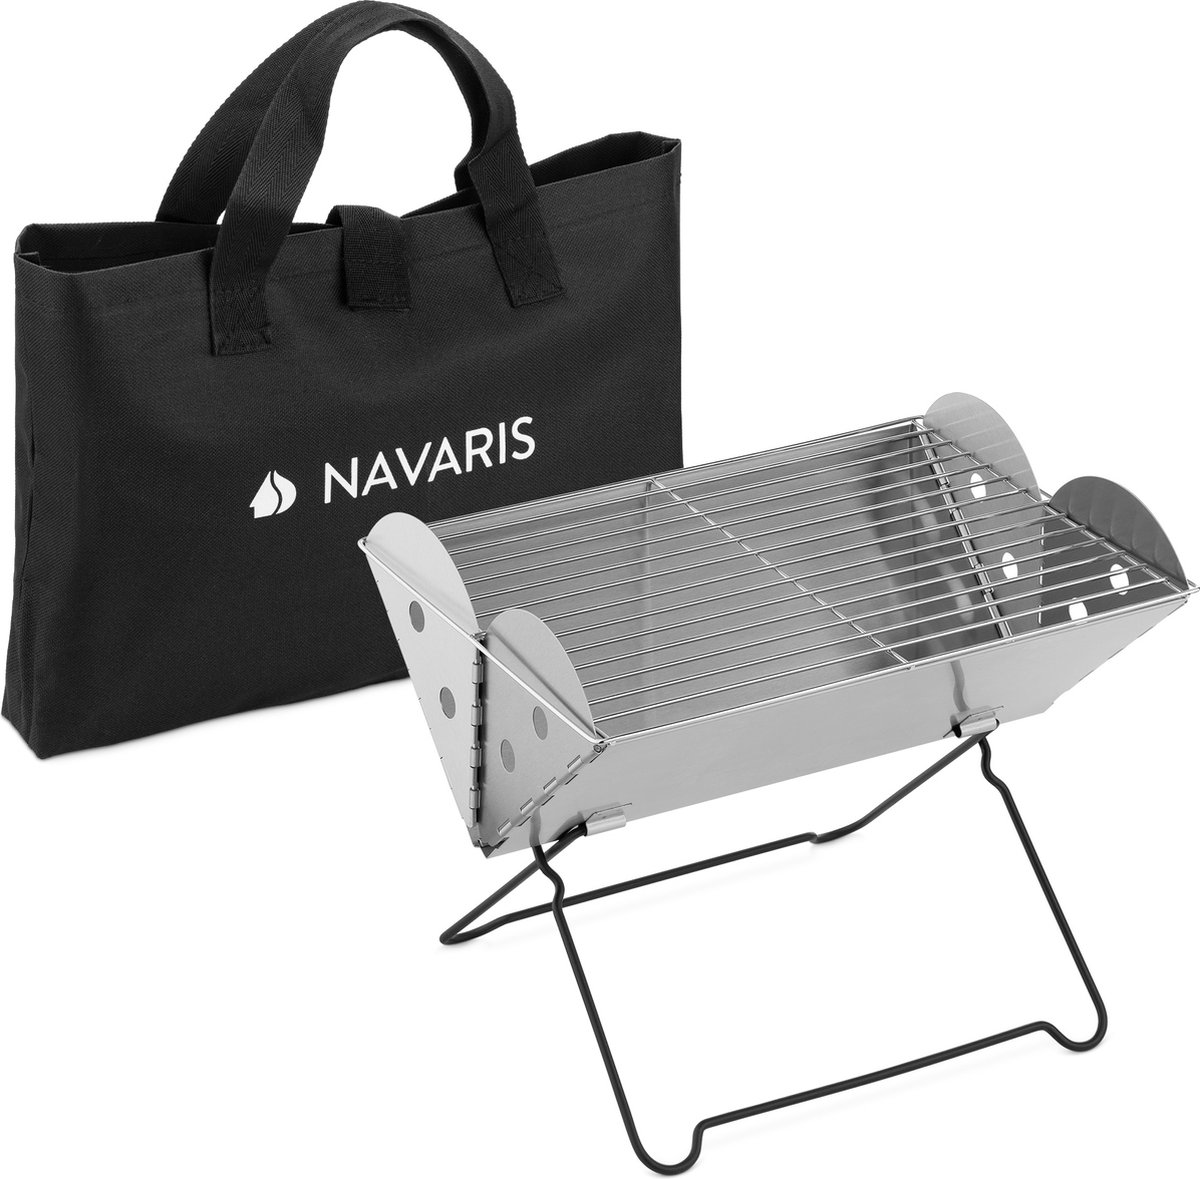 Navaris opvouwbare BBQ inclusief draagtas - Mini-barbecue 35x26,5x24,5 cm - Grill van roestvrijstaal - Voor gebruik buitenshuis